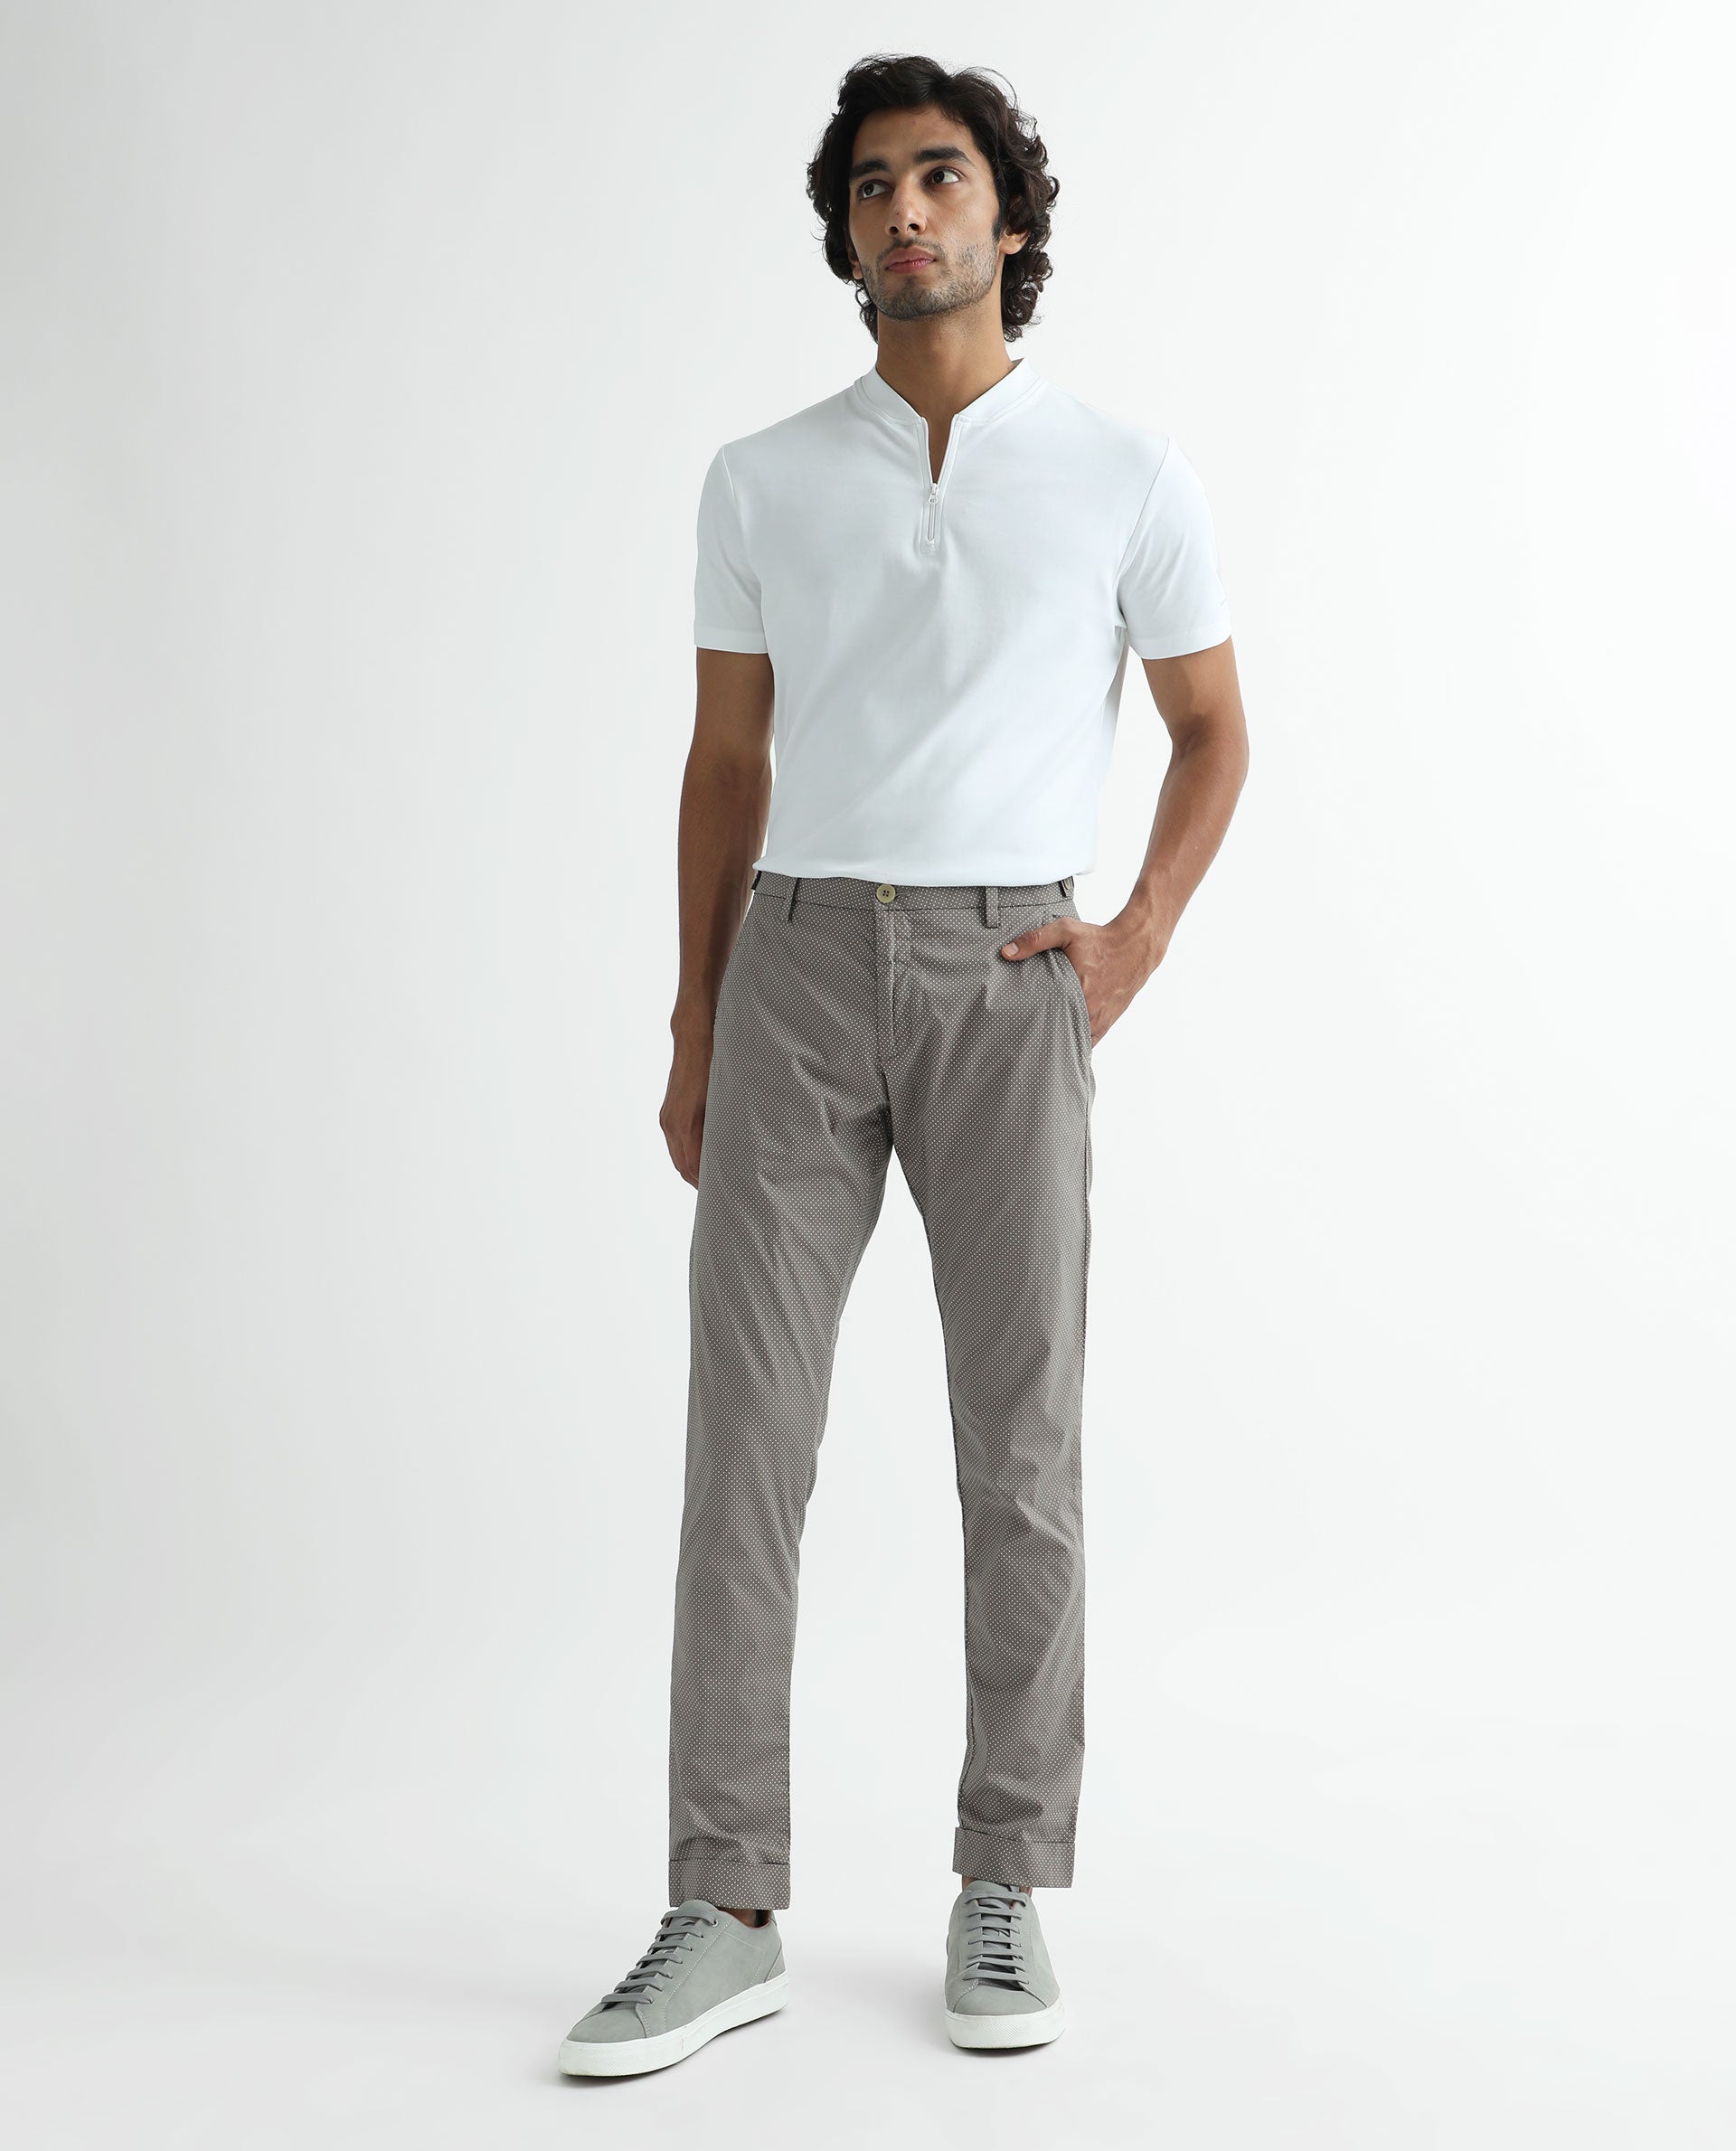 Lars Amadeus Polka Dots Printed Dress Pants for Men's Regular Fit Formal  Trousers - Walmart.com